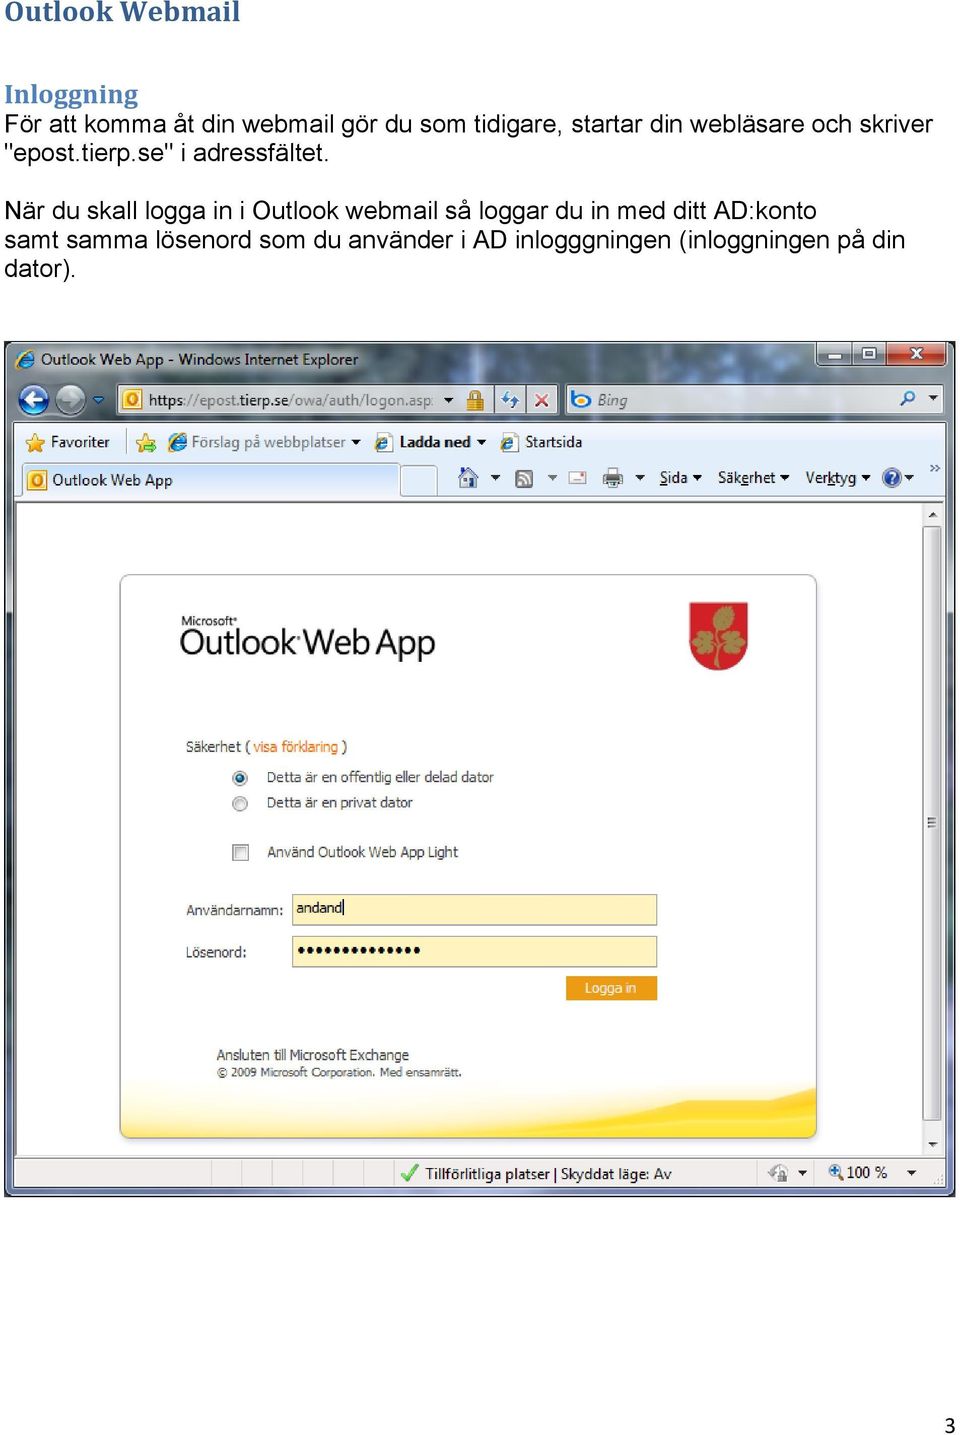 När du skall logga in i Outlook webmail så loggar du in med ditt AD:konto